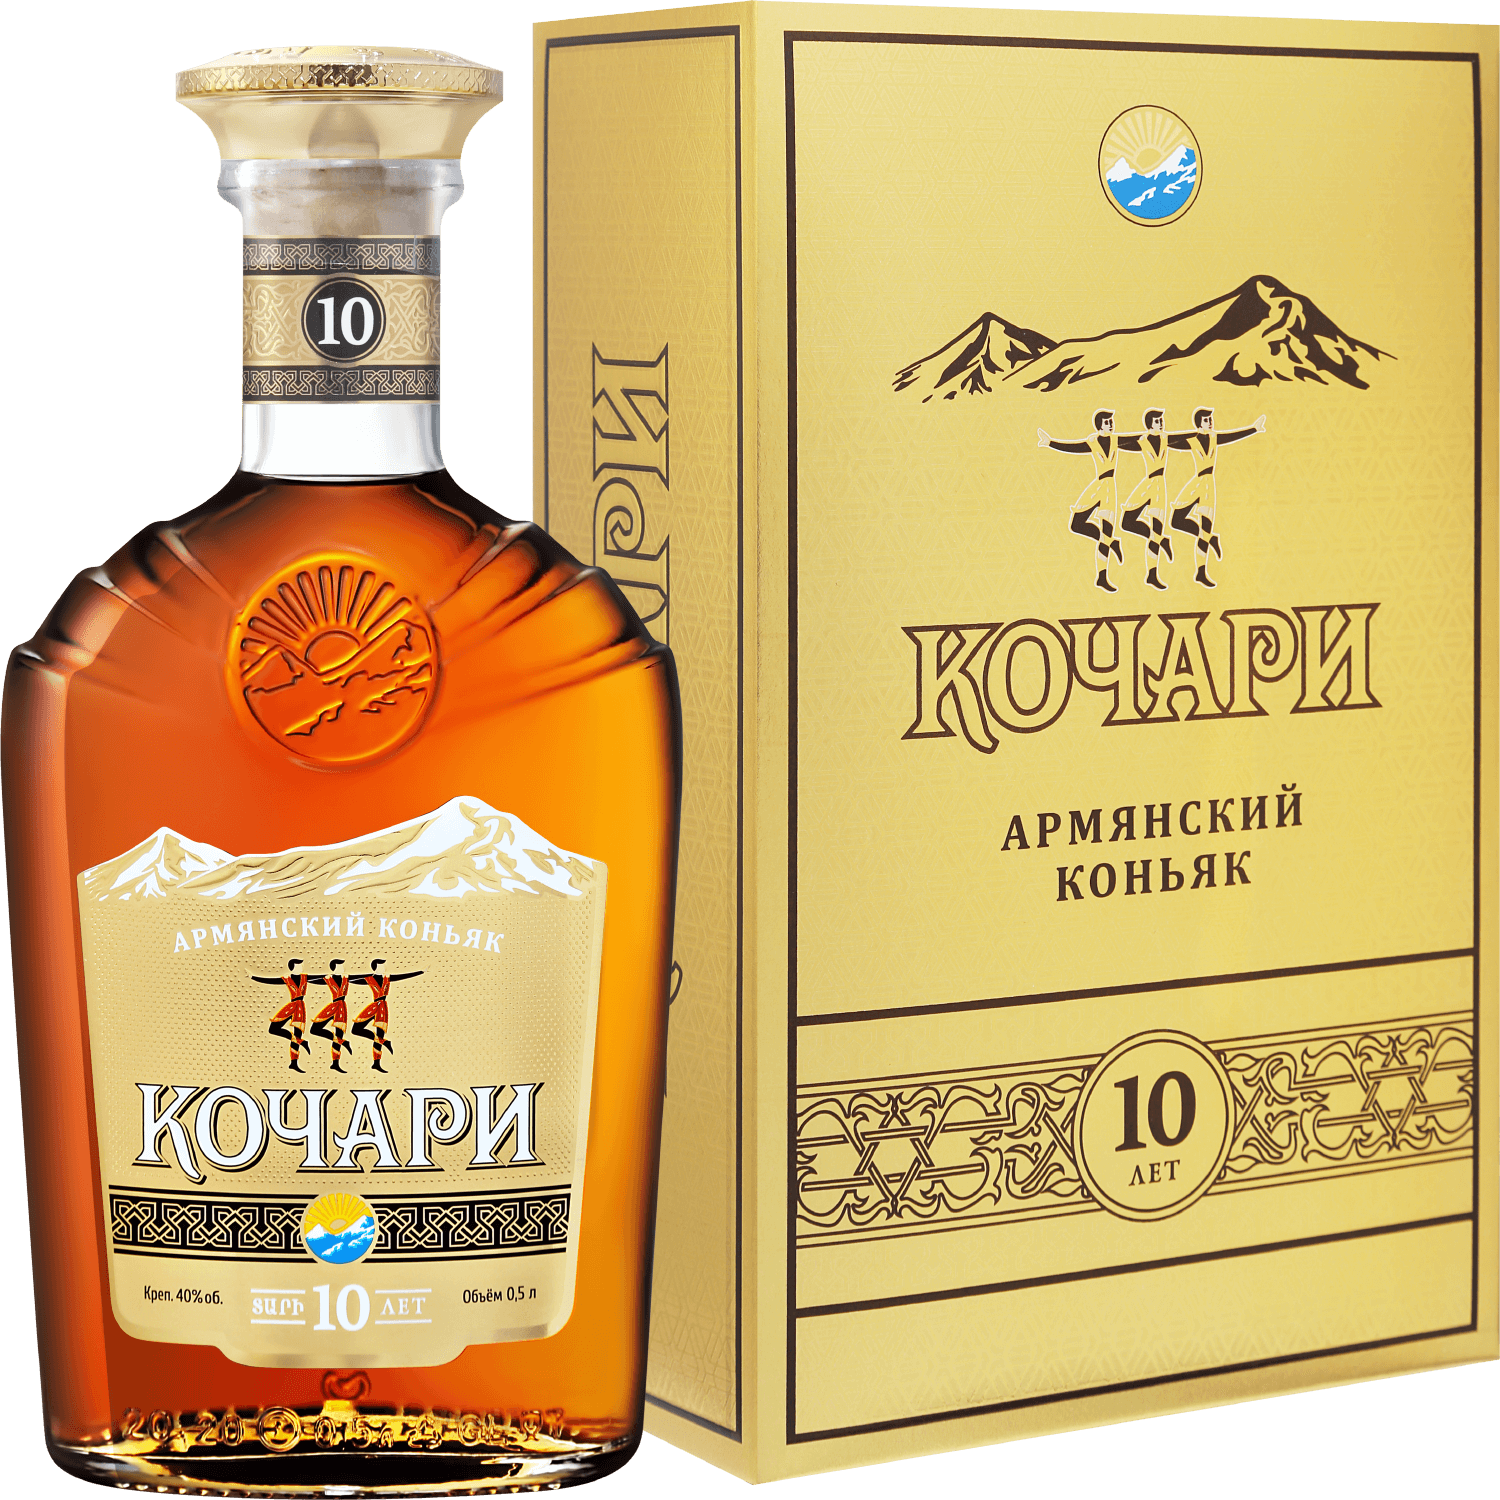 ararat otborny armenian brandy 7 y o gift box Kochari Armenian Brandy 10 Y.O. (gift box)